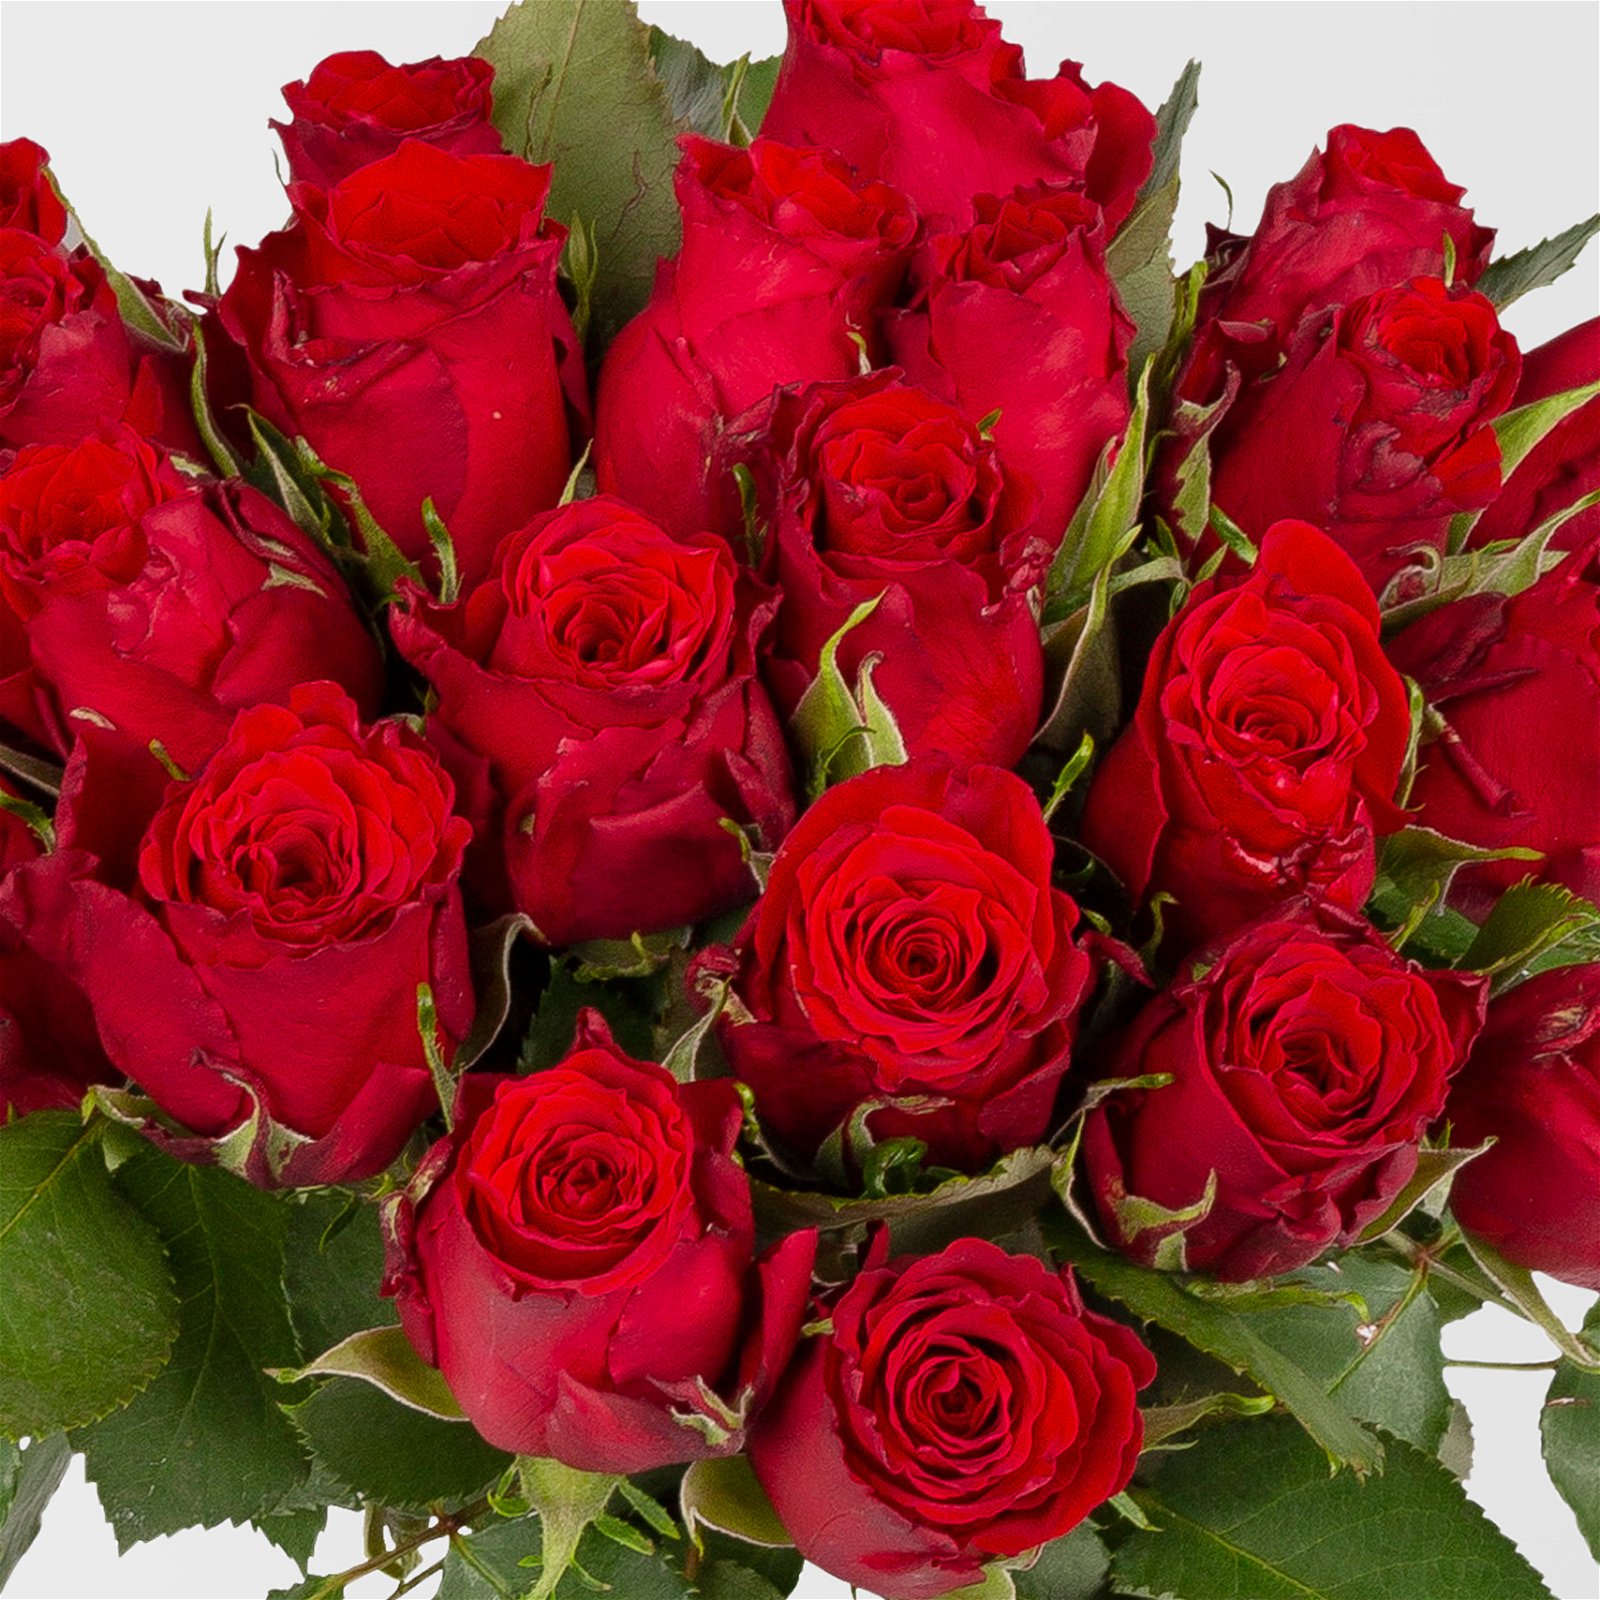 Blumenbund mit Rosen, 20er-Bund, rot, inkl. gratis Grußkarte